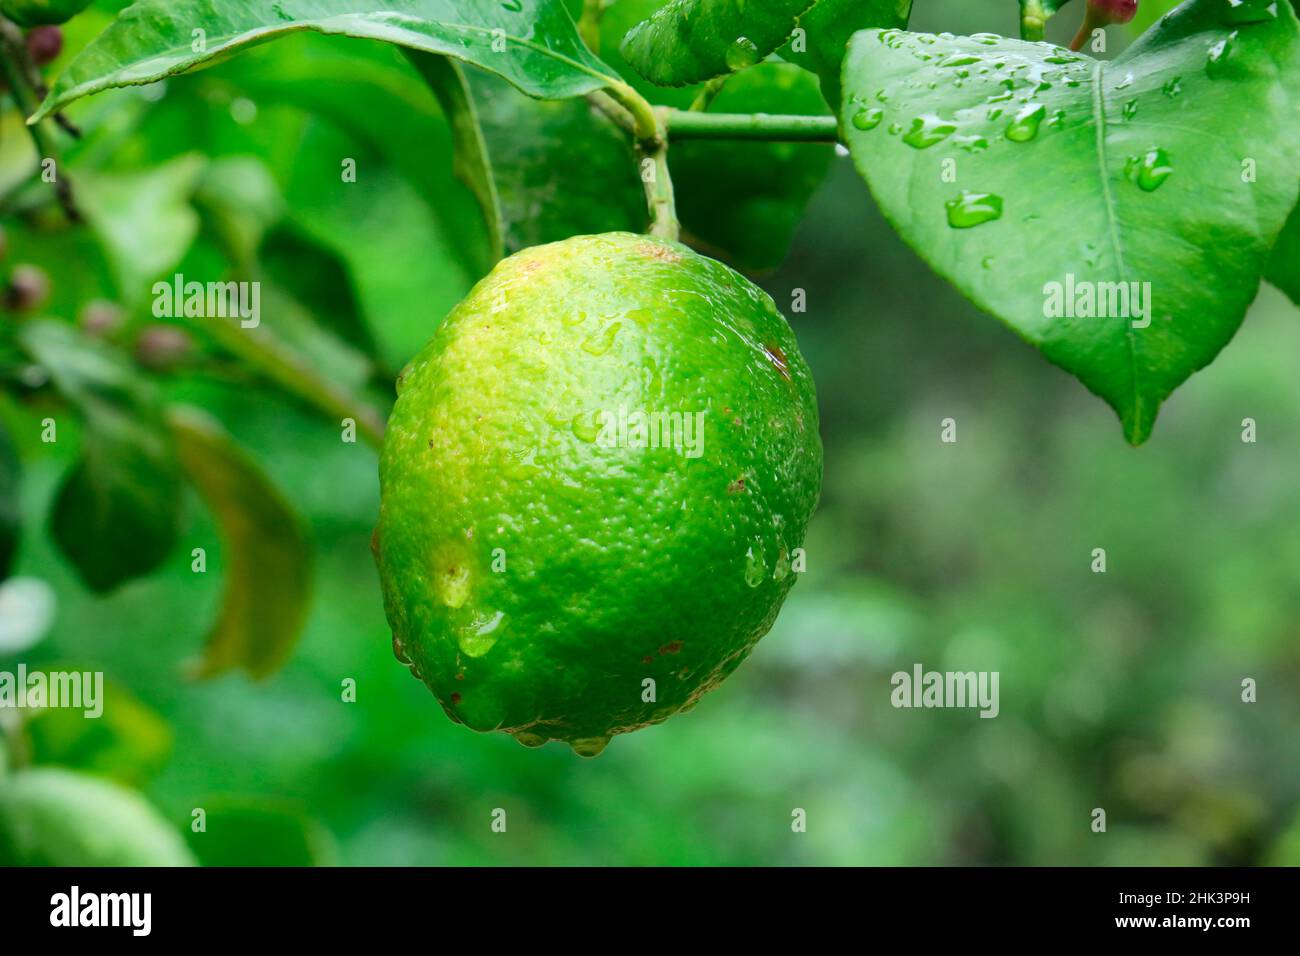 Lemon (Citrus x limon) fruit on tree Stock Photo